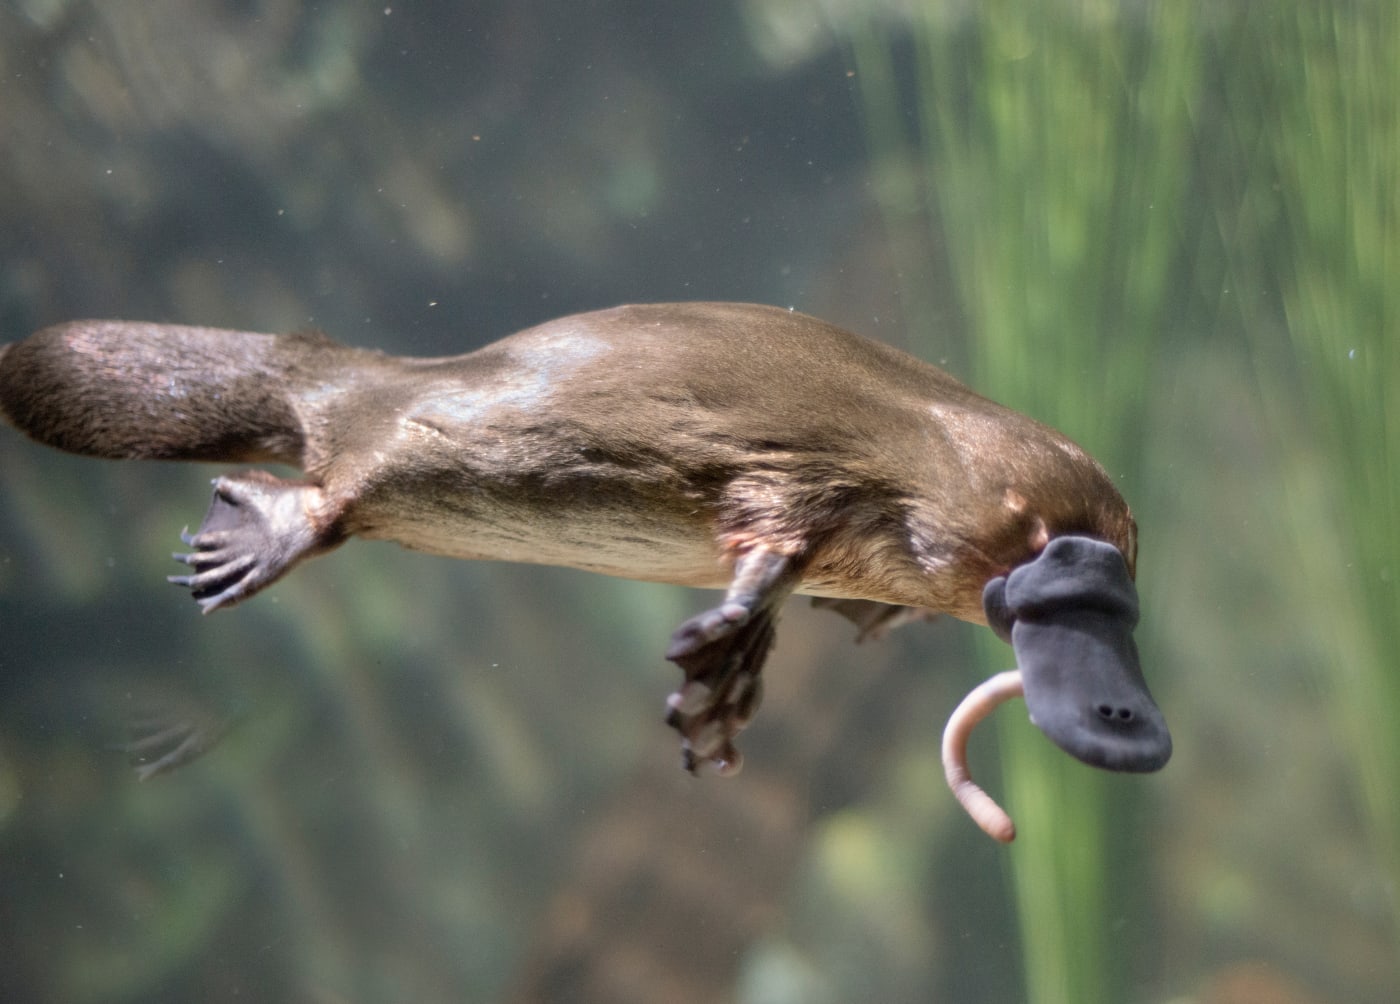 Tasmania platypus eating worm